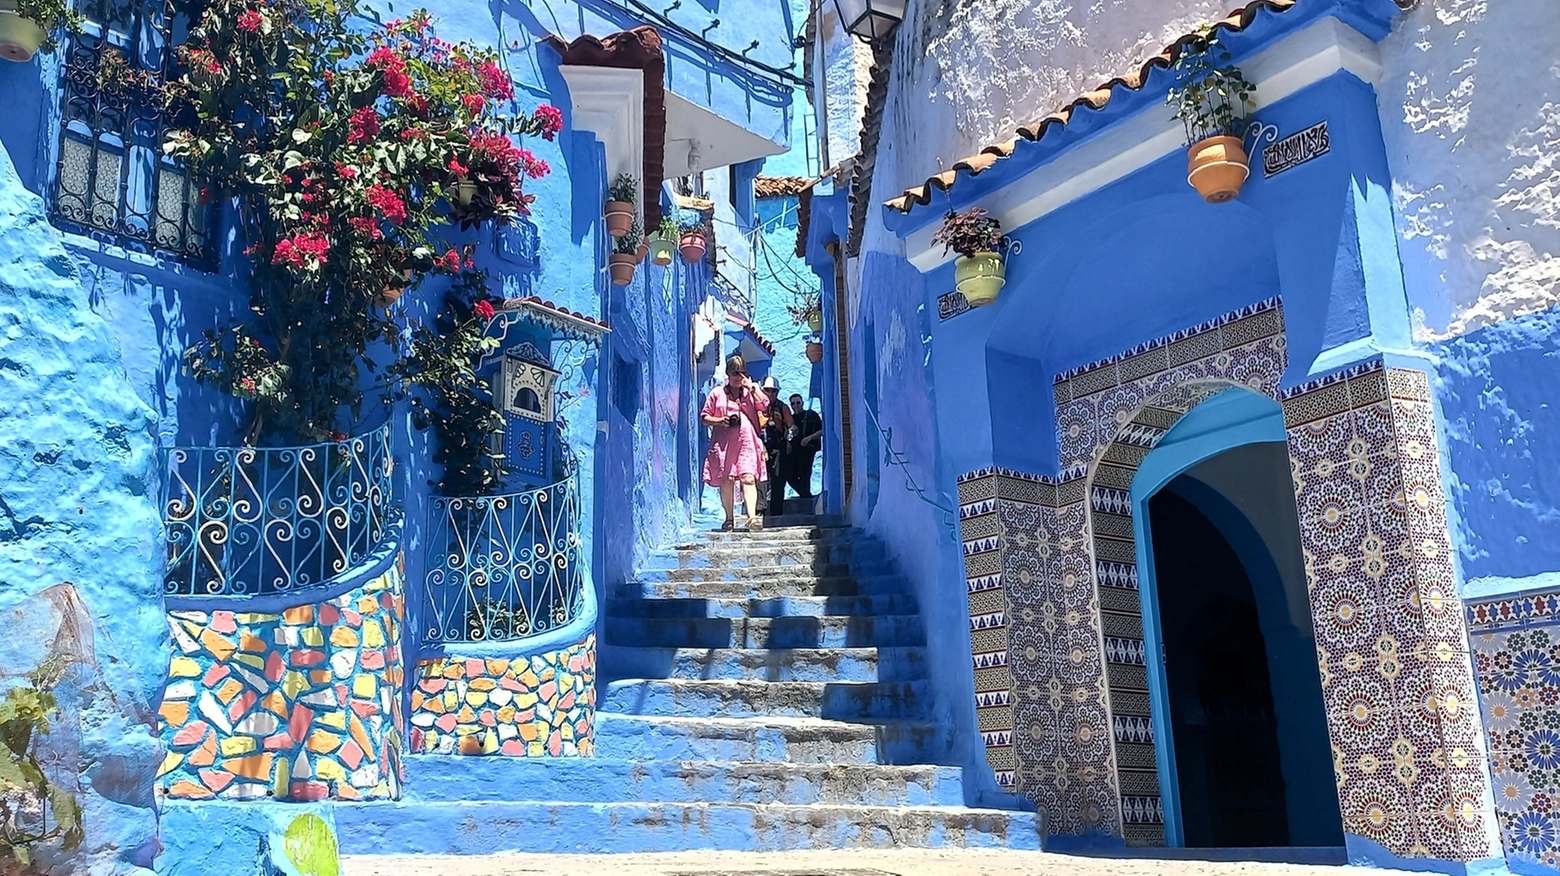 La perla del Nordafrica, dove sono colorati “tutti i muri, case, vicoli e palazzi”, ha oltre un milione di post col proprio tag su Instagram. Ma la sua pittoresca medina ha una ‘verità nascosta’